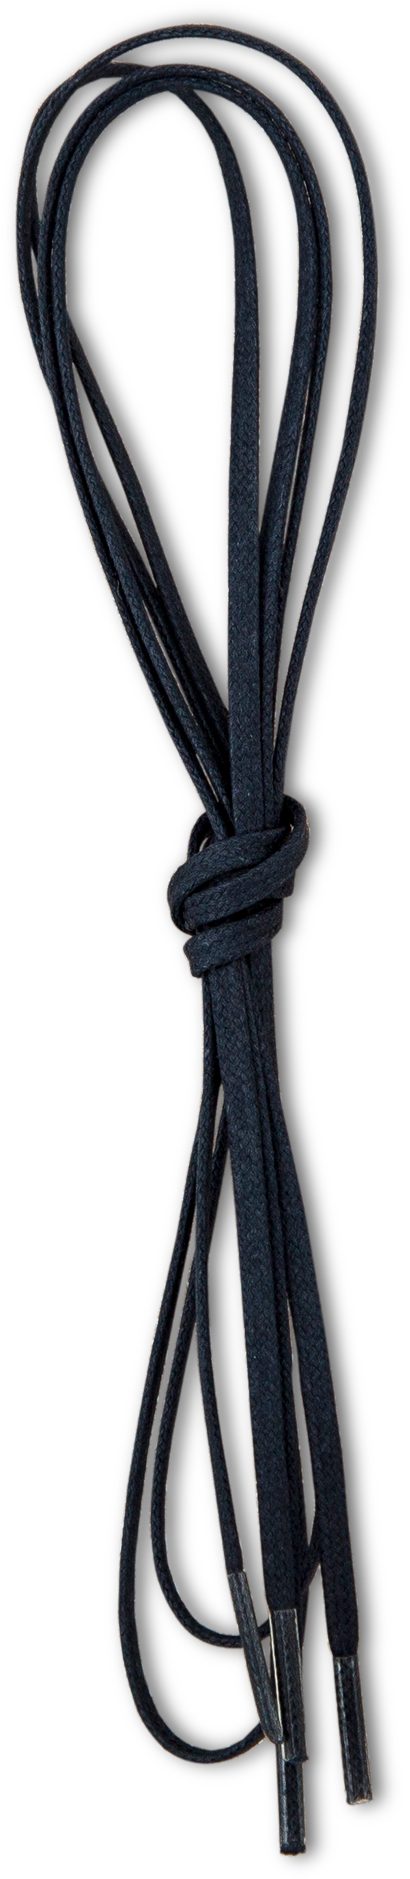 Black Shoelace Bundle PNG